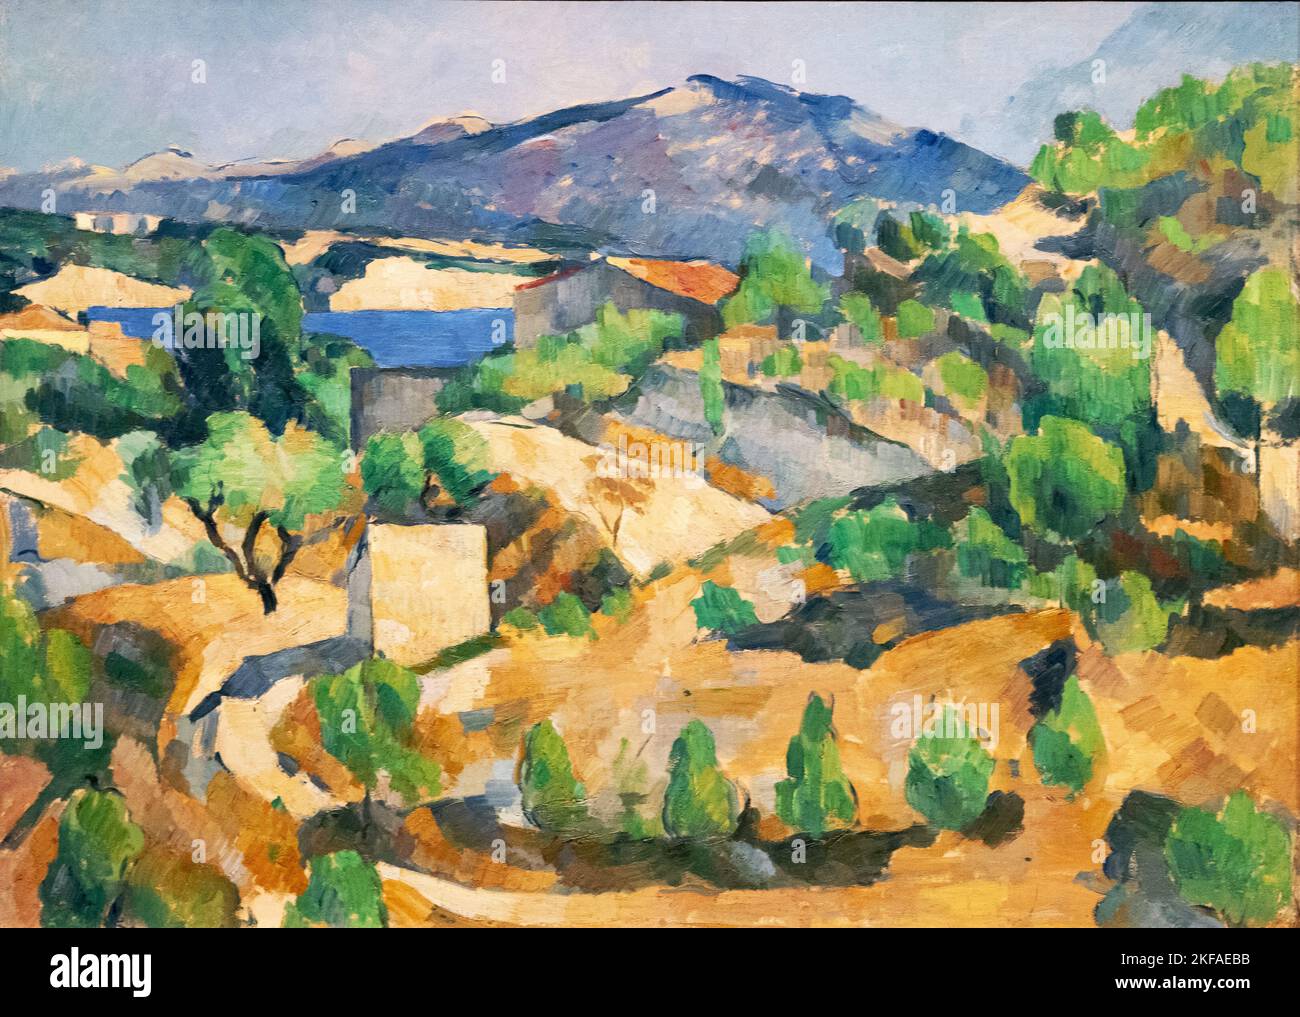 Peinture Paul Cezanne ; barrage François Zola, 1887-8 ; l'Estaque, Aix-en-provence, France; peinture de paysage post-impressionnisme, 19th siècle. Banque D'Images